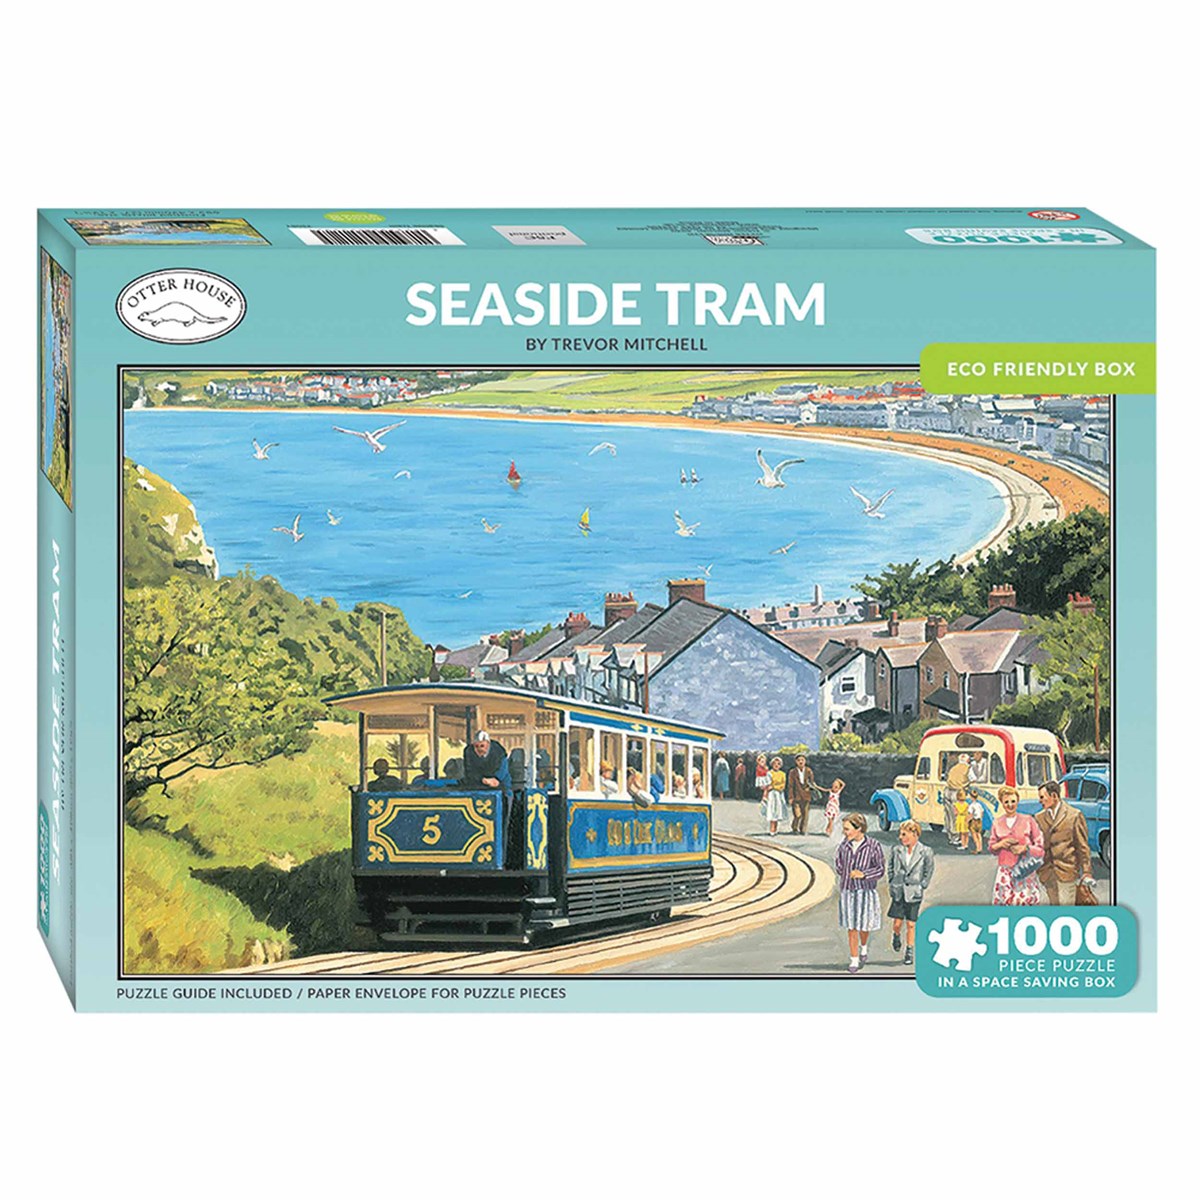 Seaside Tram Jigsaw